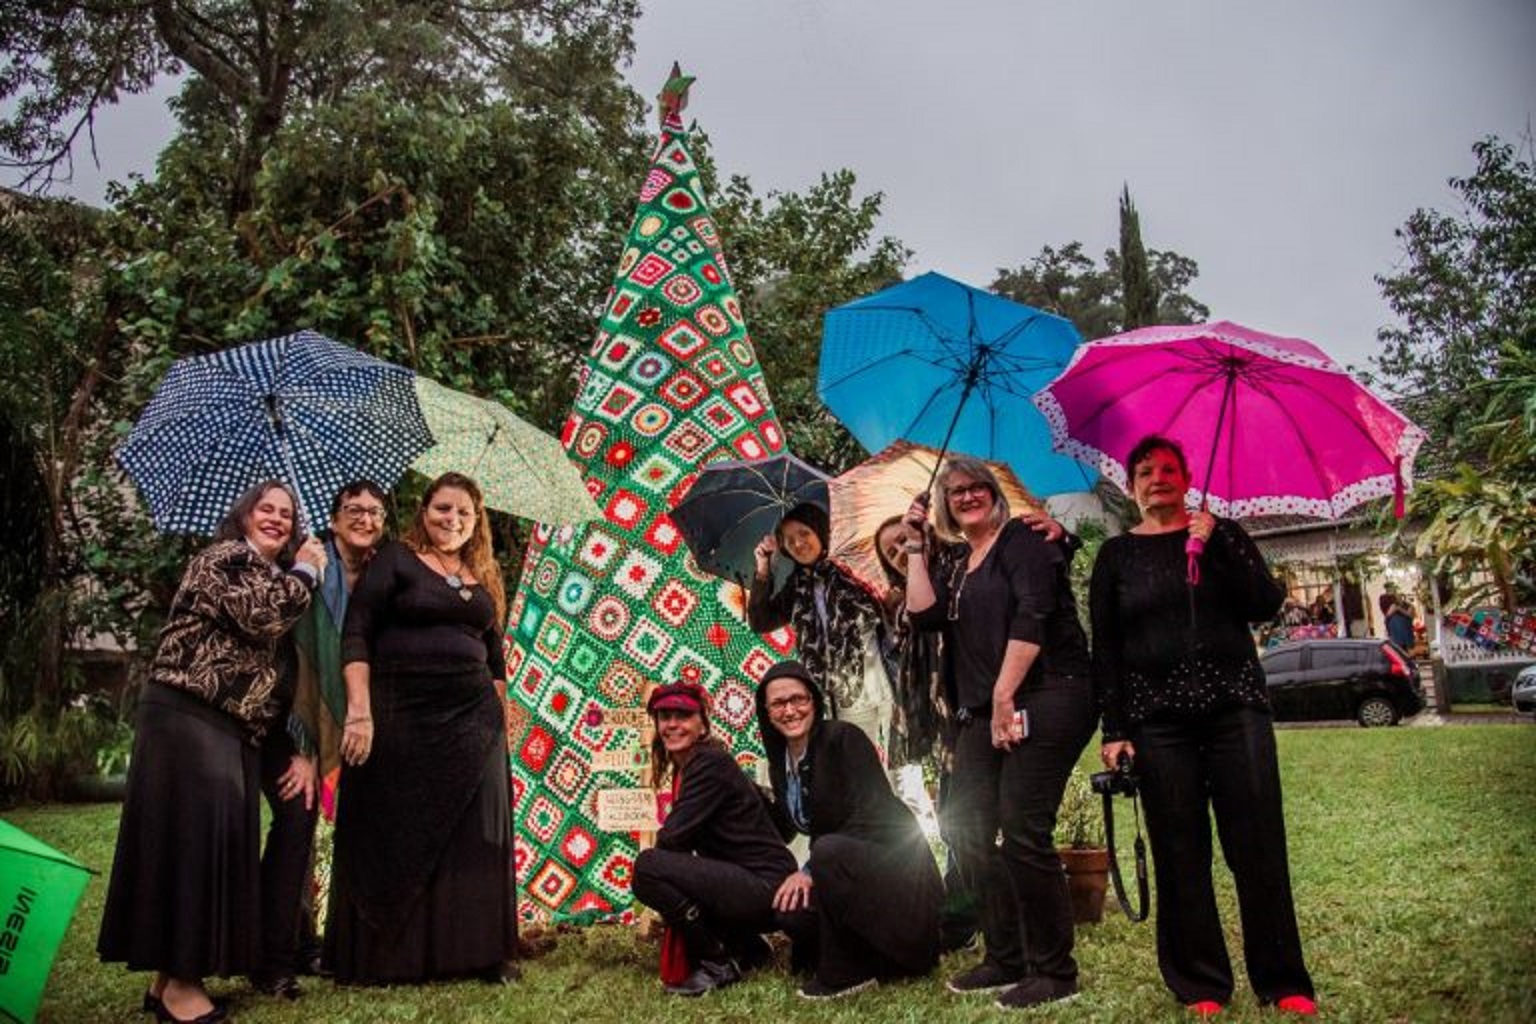 Coletivo de Mulheres inaugura árvore de 4 metros toda feita de crochê em Petrópolis